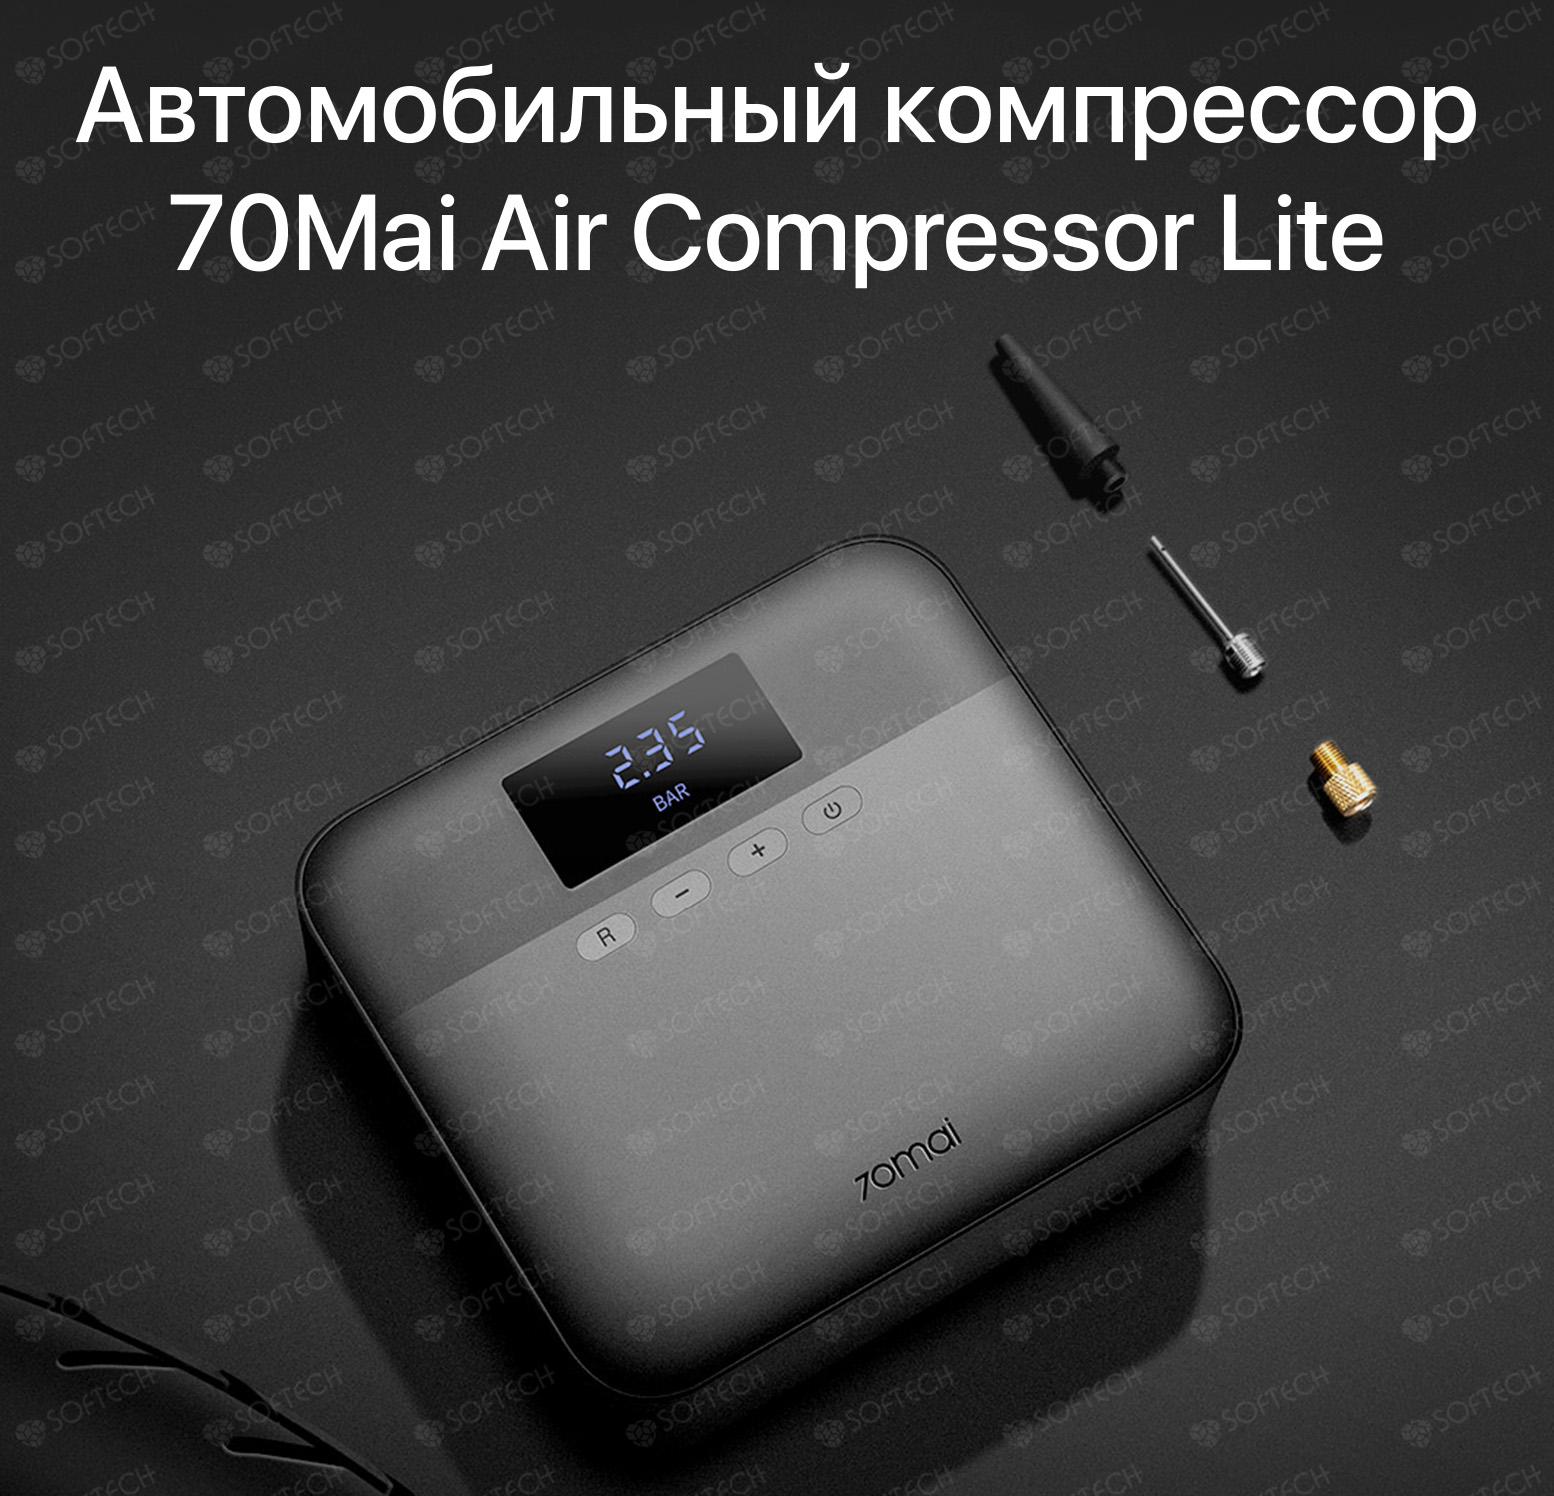 70mai air compressor lite tp03. Автомобильный компрессор Xiaomi 70mai Air Compressor Lite. Автомобильный компрессор 70mai Air Compressor MIDRIVE tp01. Автомобильный компрессор Xiaomi 70mai Air Compressor MIDRIVE tp01. Автомобильный компрессор 70mai Air Compressor Lite черный.